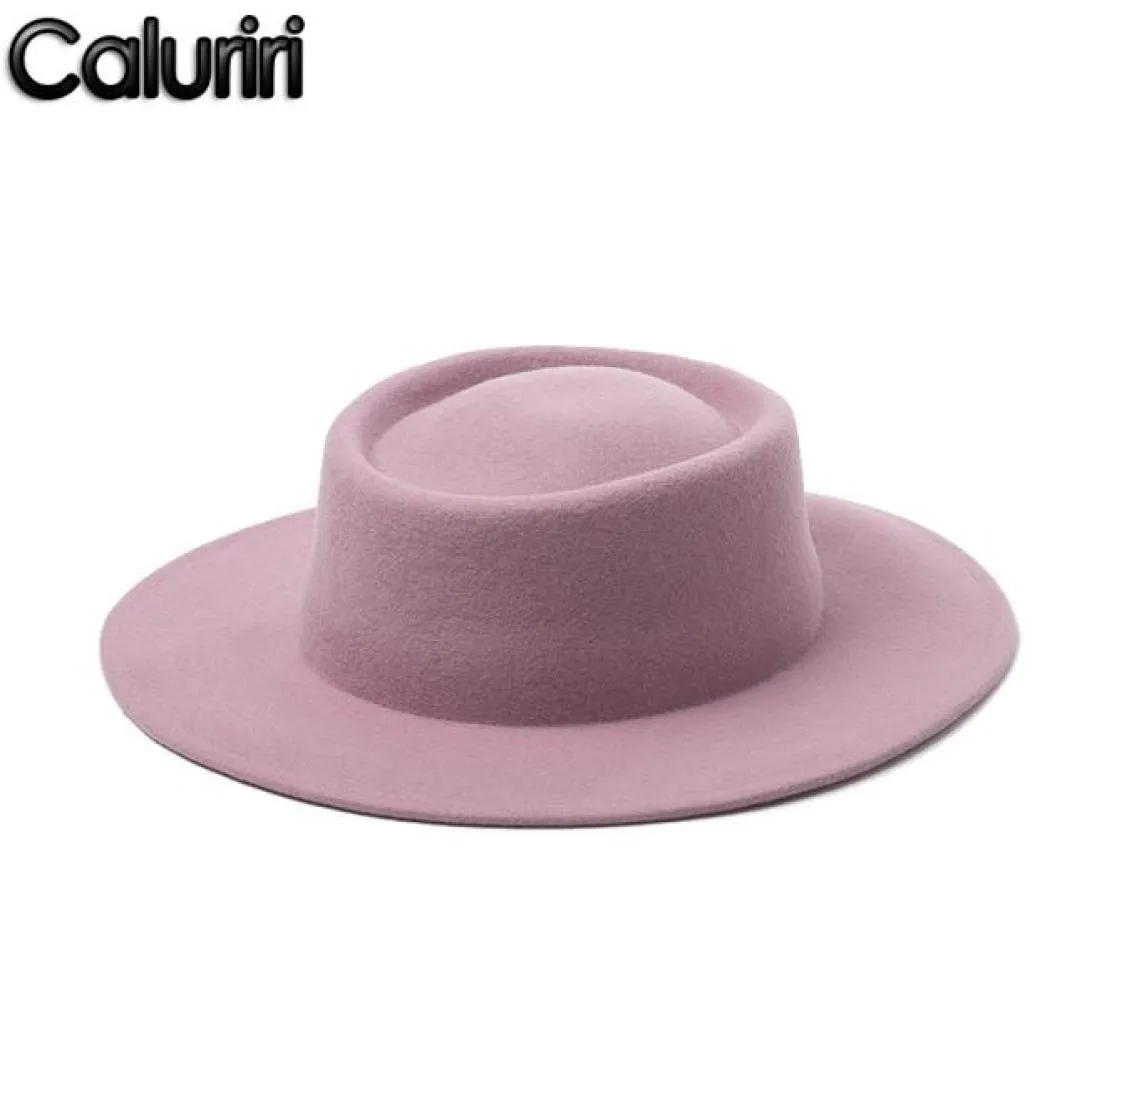 Geizige Brimhüte Caluriri Wolle Fedora Hut Winter Outdoor Dame elegant breit 100 Frauen Pink Temperament6687990